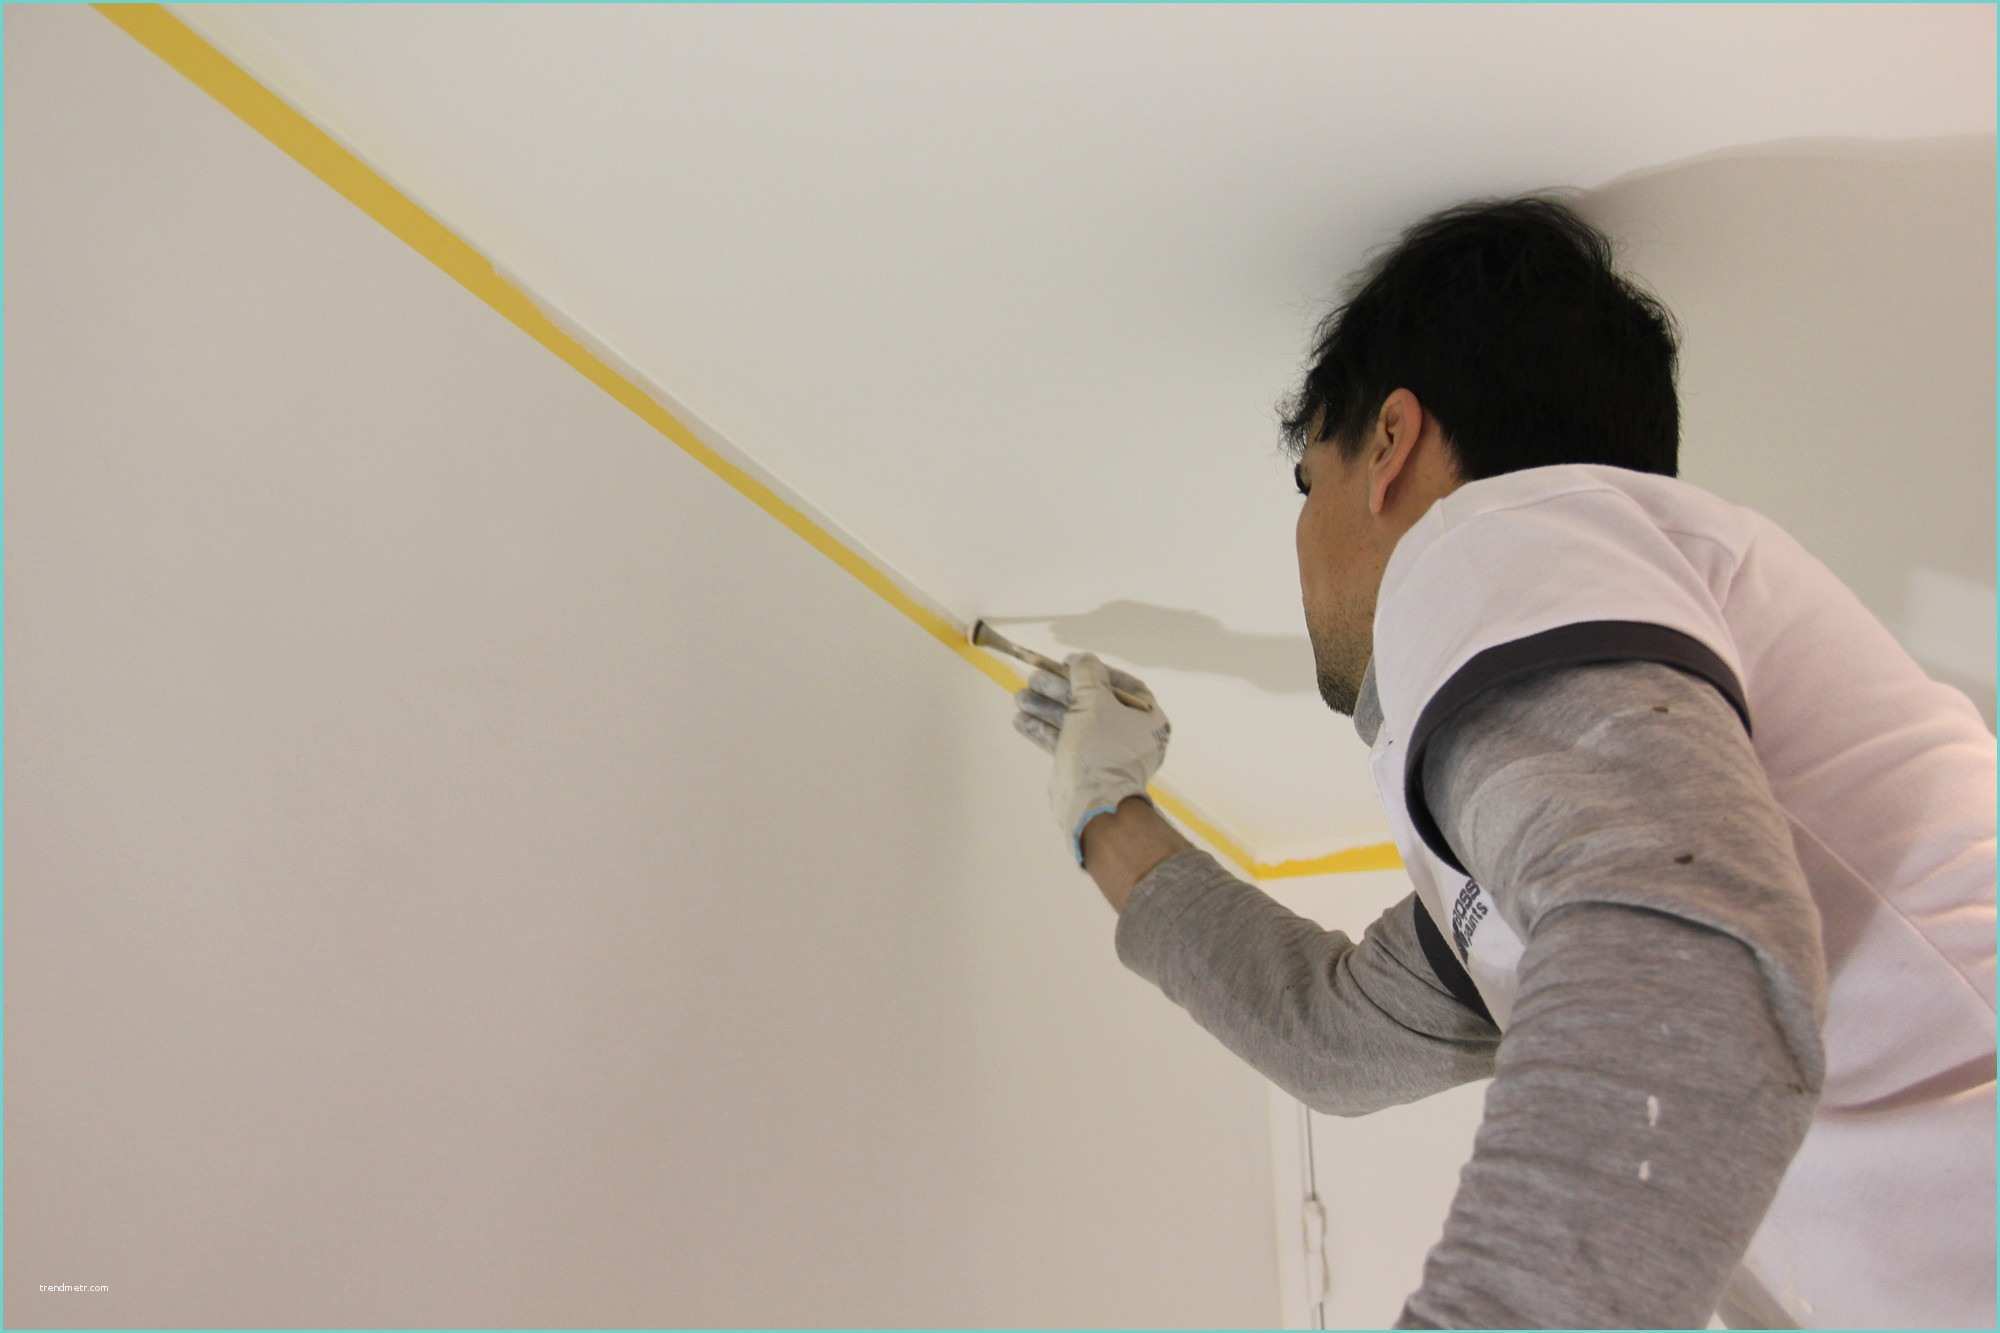 Peindre Un Plafond En Couleur Blog Ment Peindre Un Plafond Sans Traces Colora